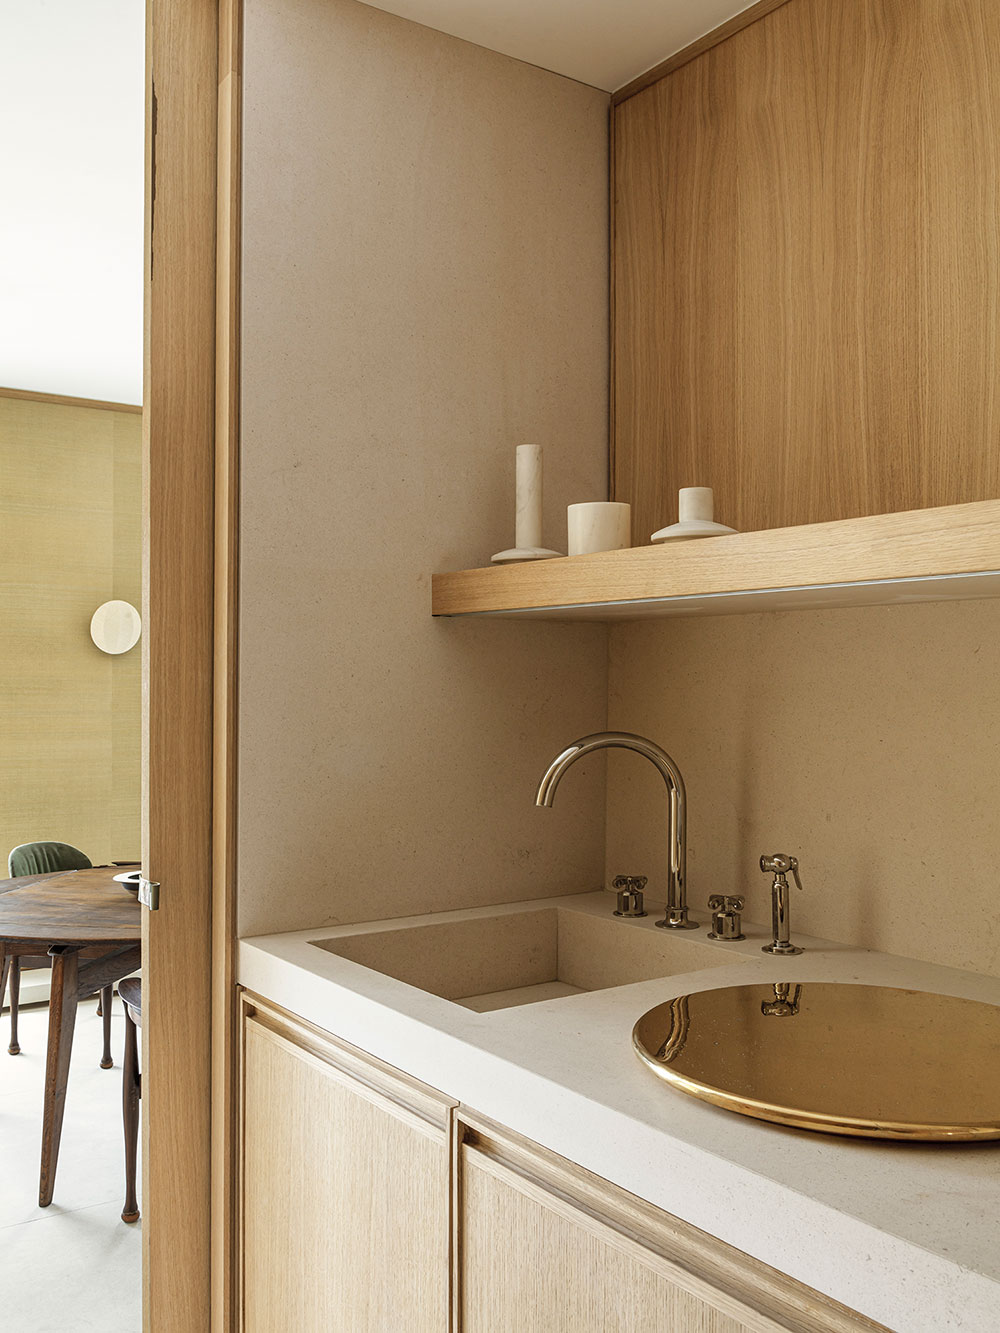 AFTER BACH,巴黎,公寓設計案例,Jessica Berguig,Francesco Balzano,公寓設計,日式美學,日式風格